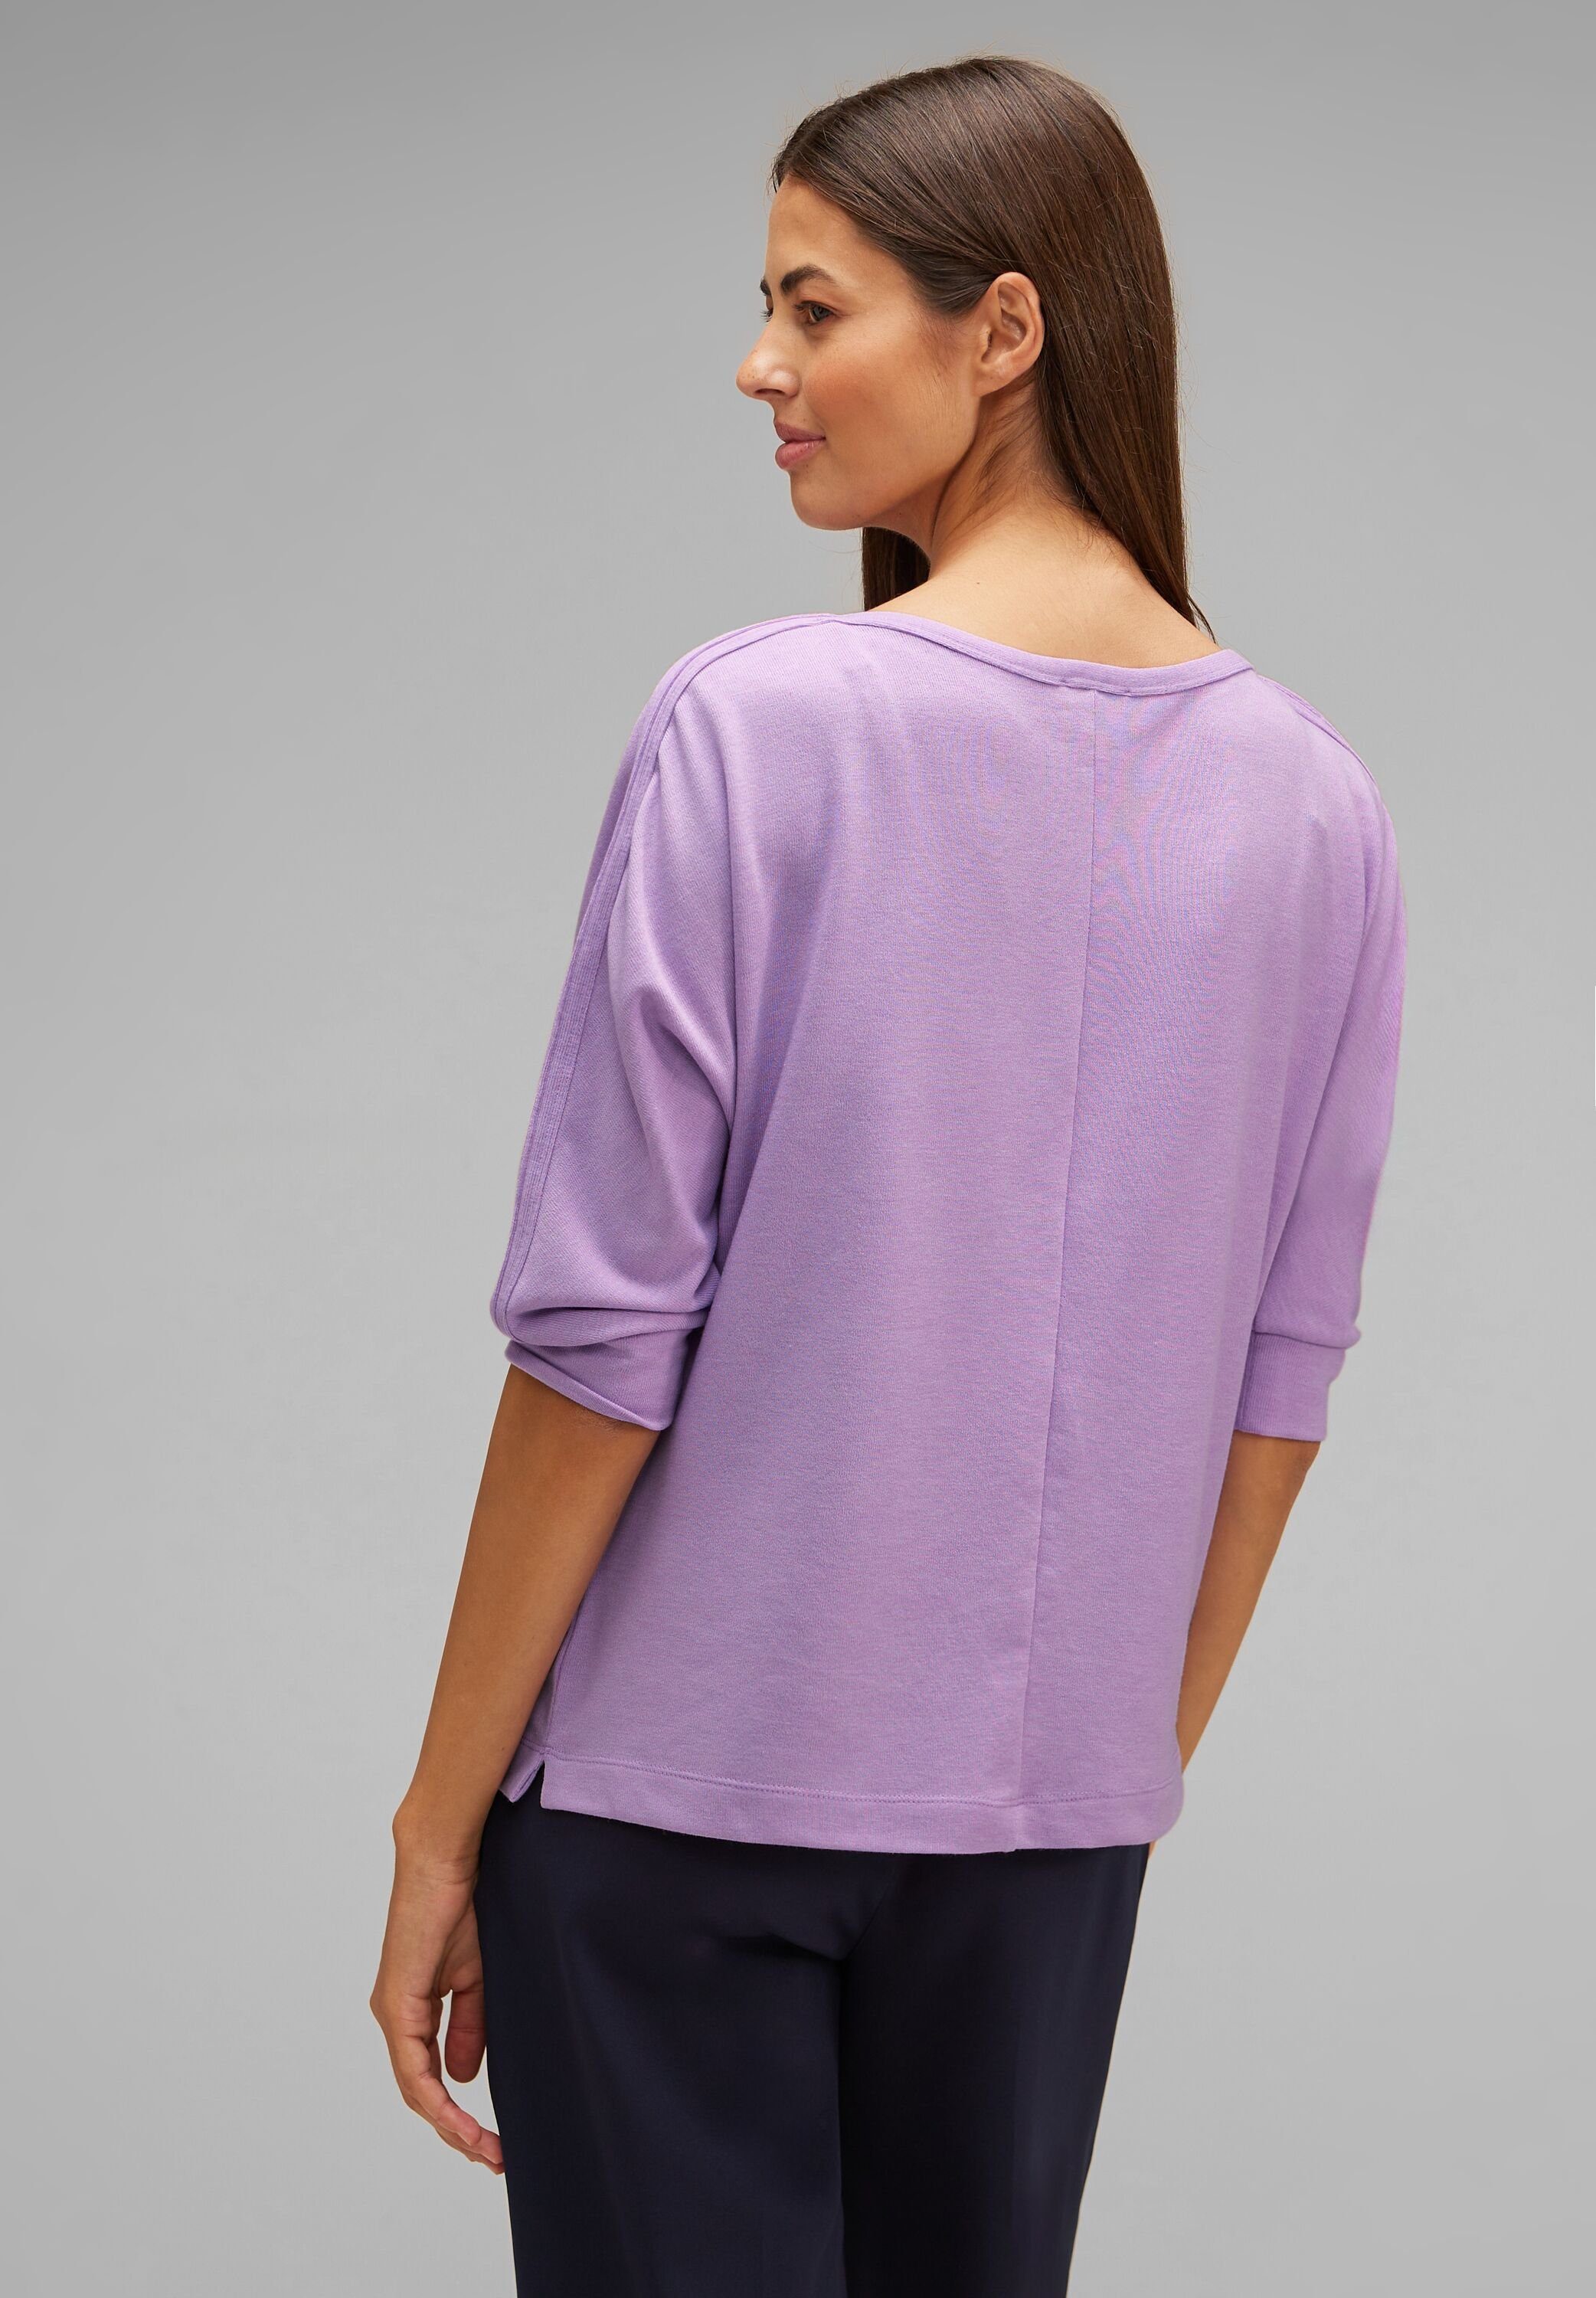 mit Shirt pure soft 3/4-Arm-Shirt Typo-Print Schimmernder Wording melange STREET ONE Schimmer Batwing lilac